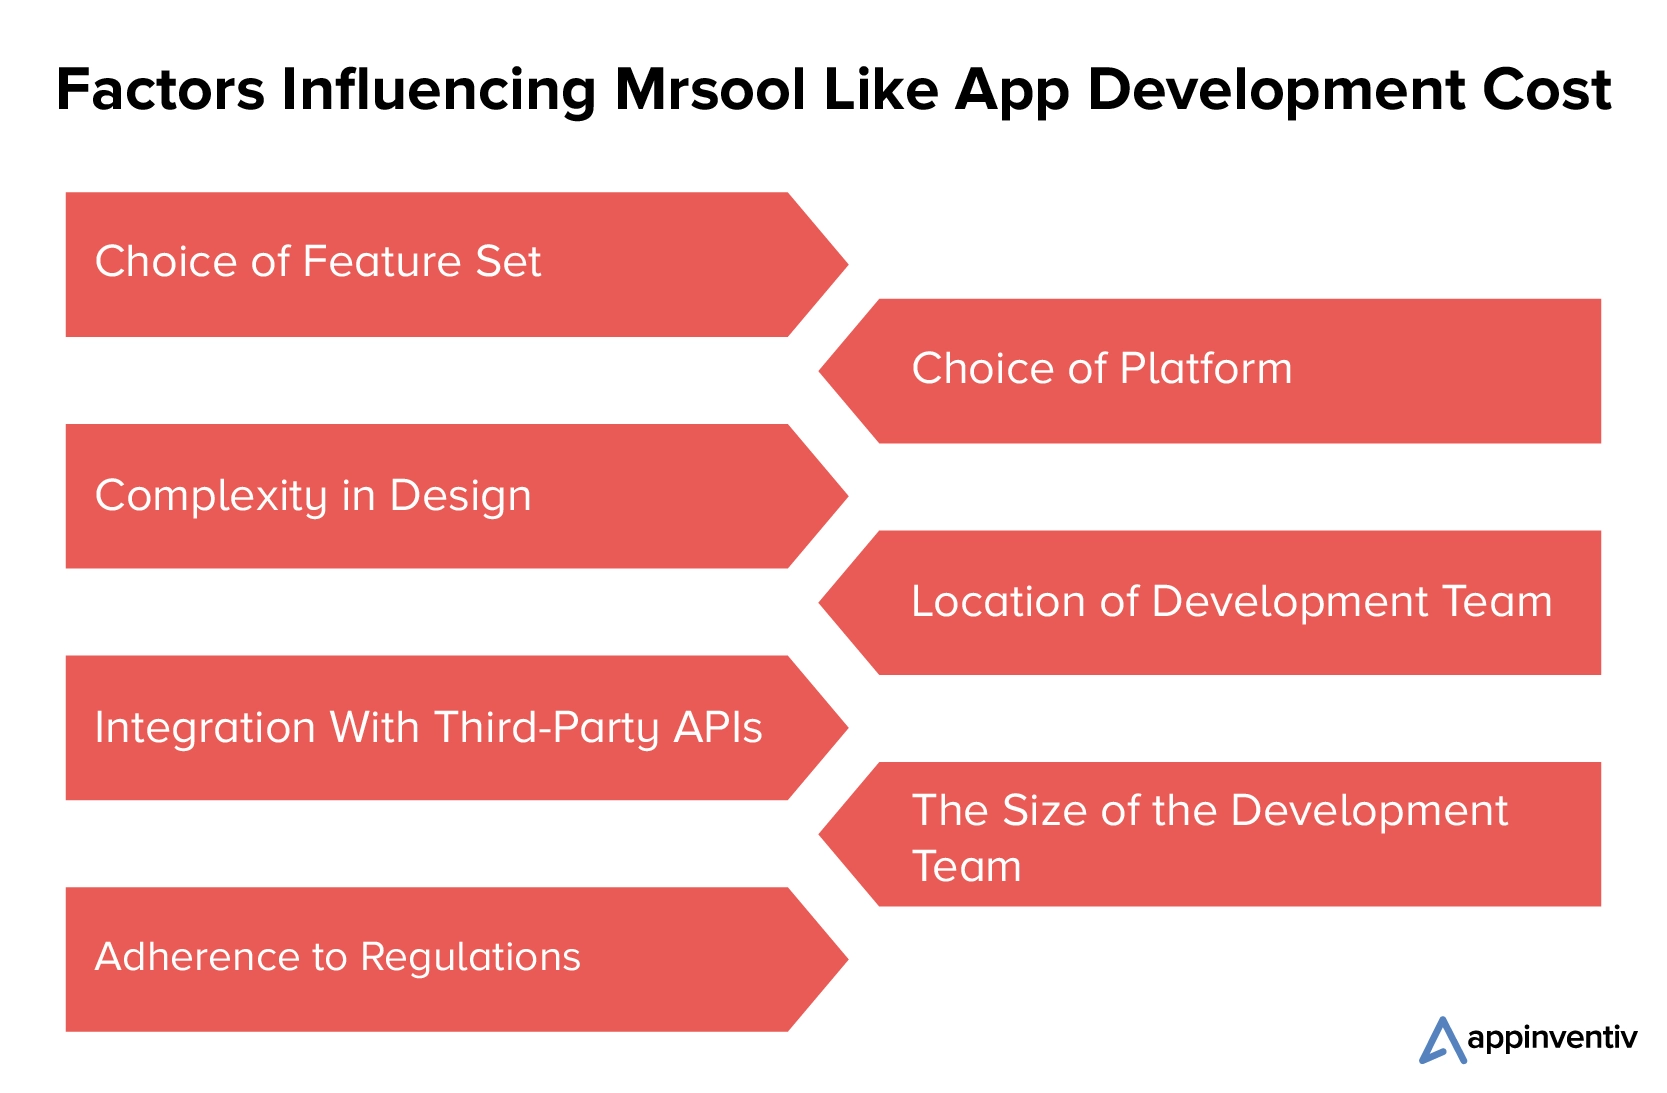 Fattori che influenzano il costo di sviluppo dell'app Msool Like